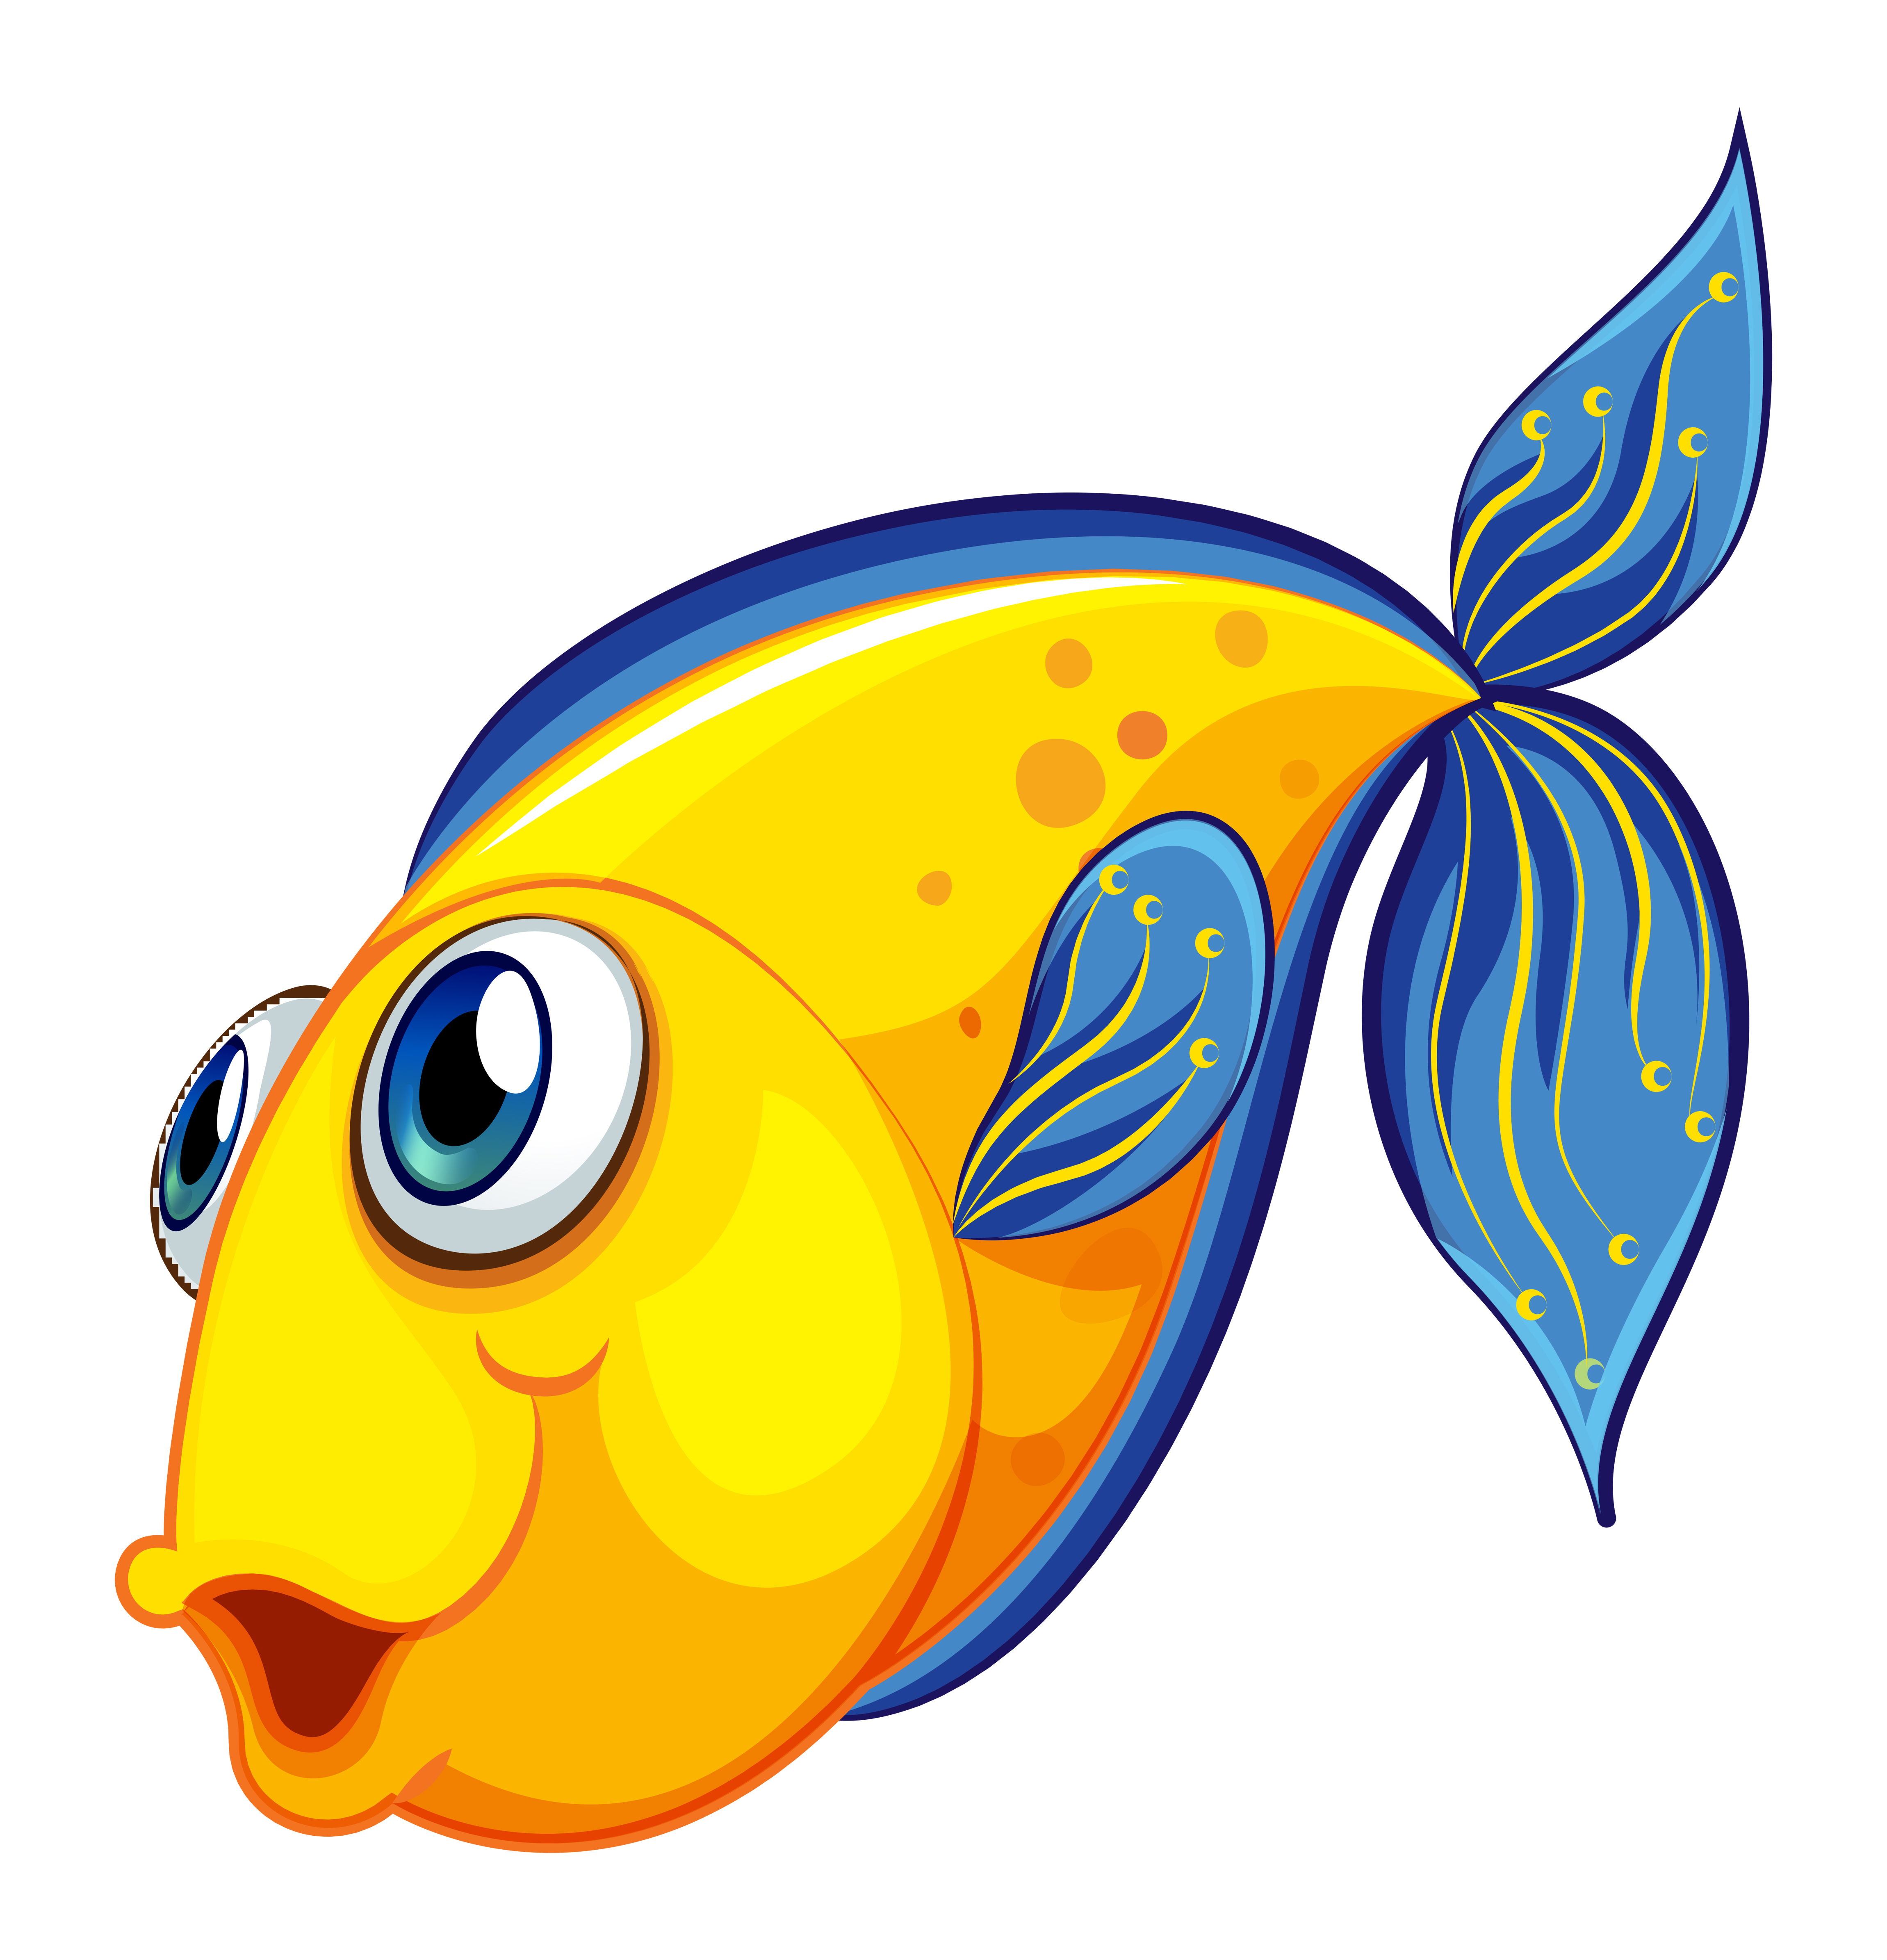 A yellow fish 522838 Download Free Vectors Clipart Graphics & Vector Art